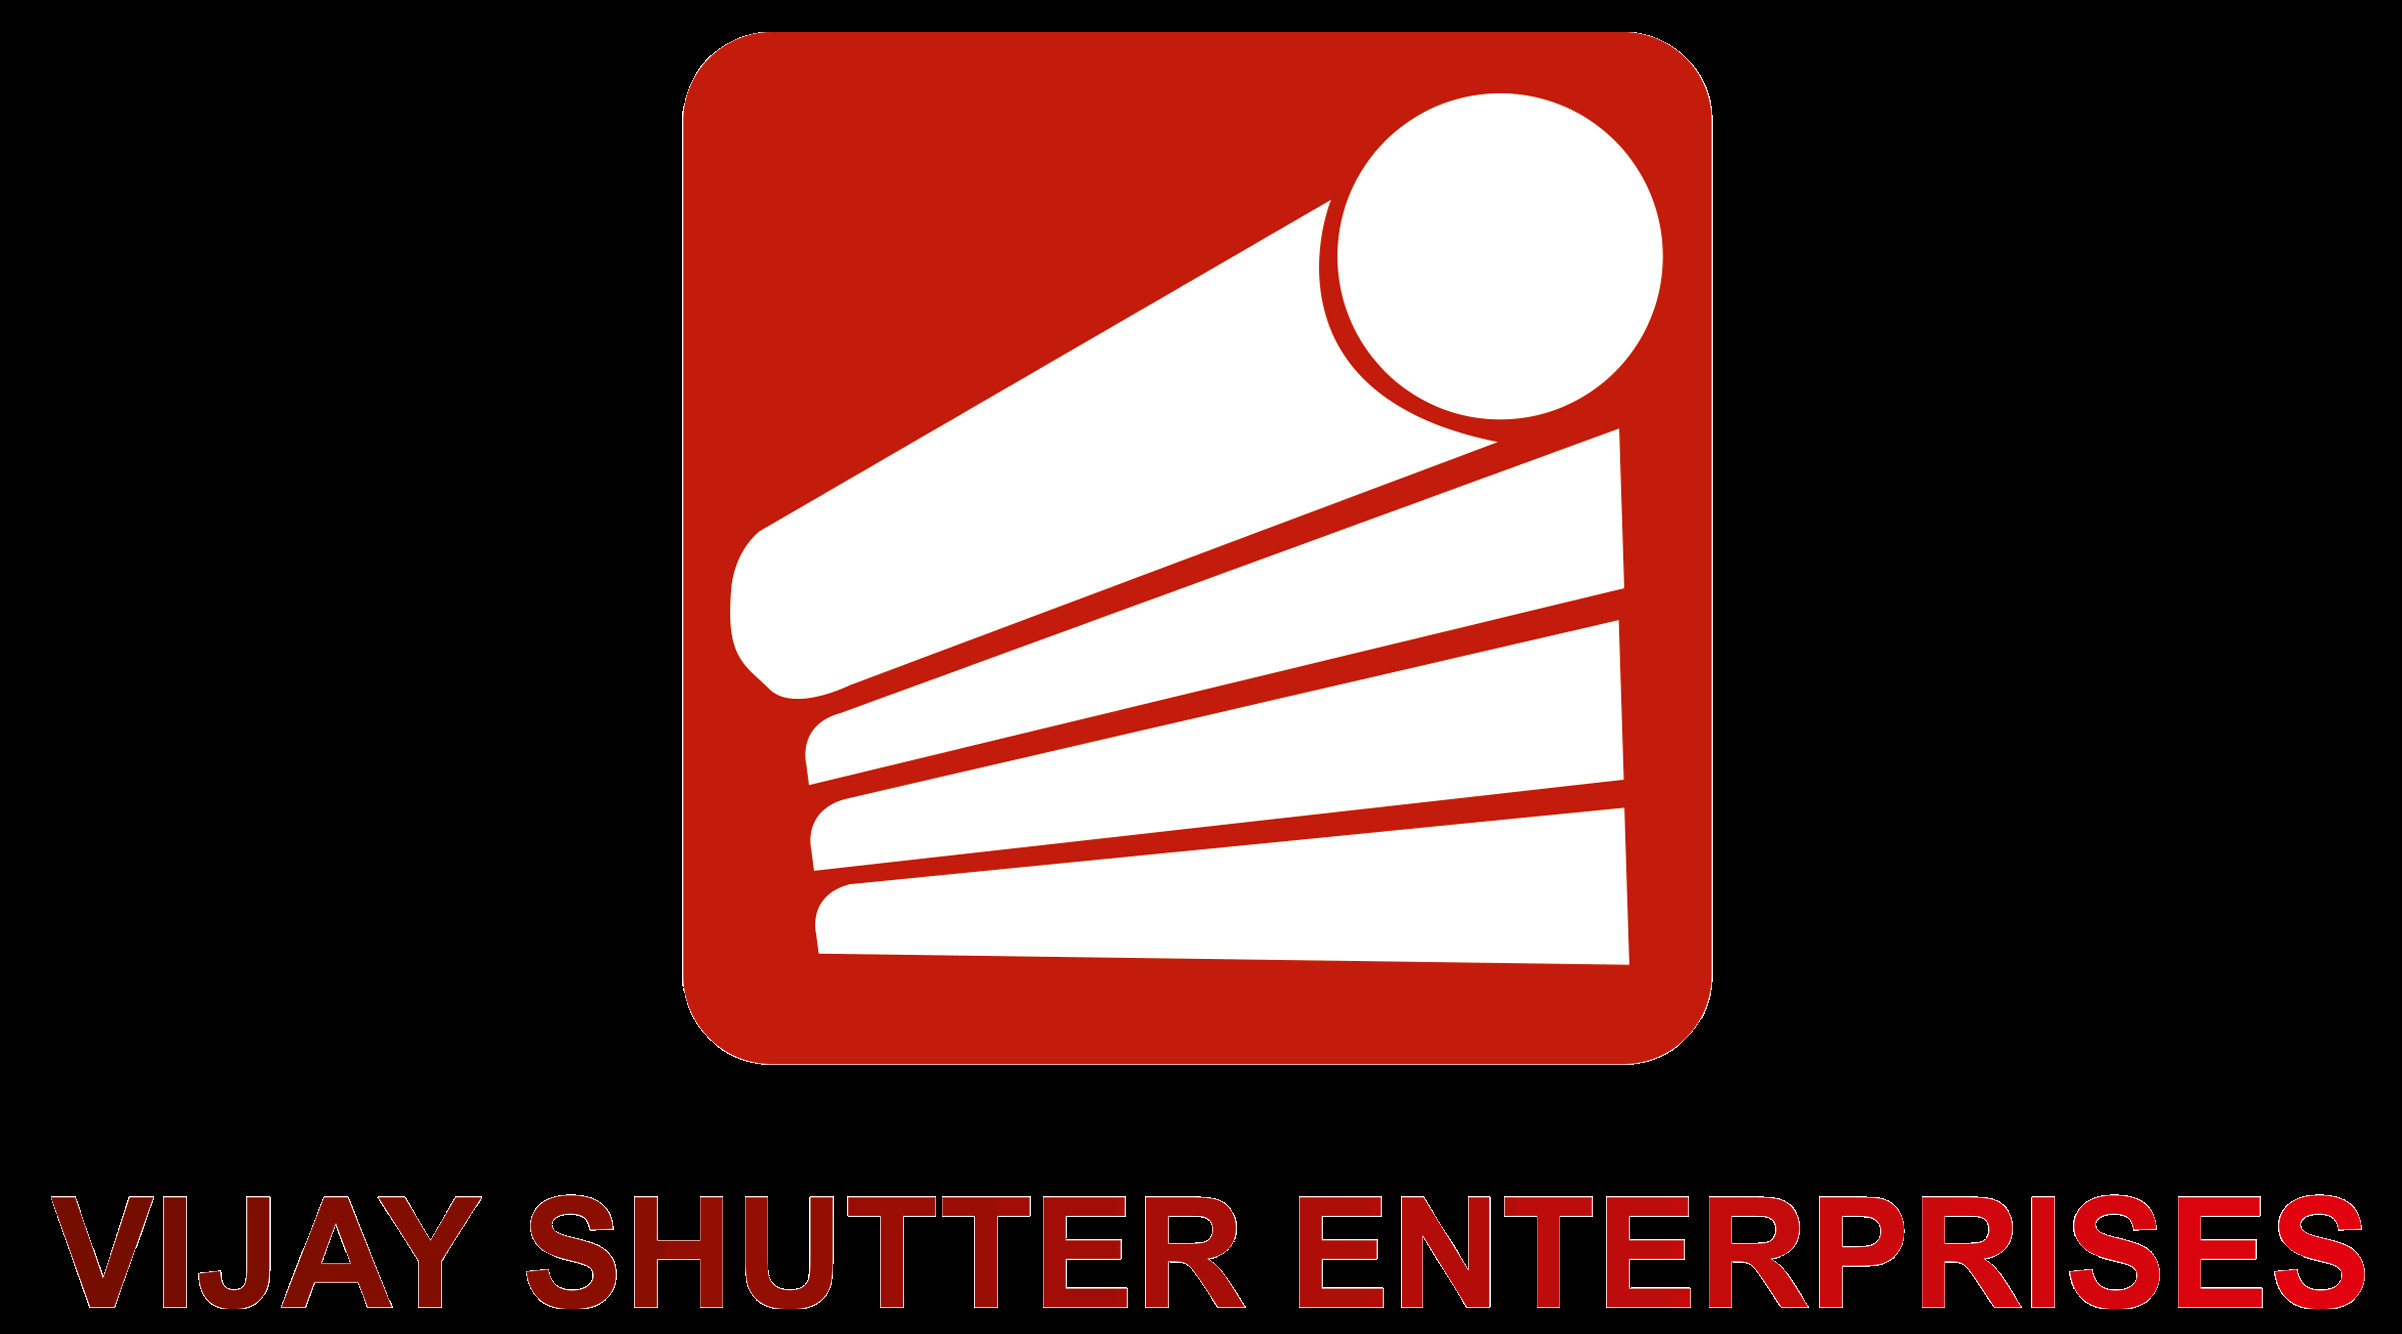 Vijayshutter enterprises